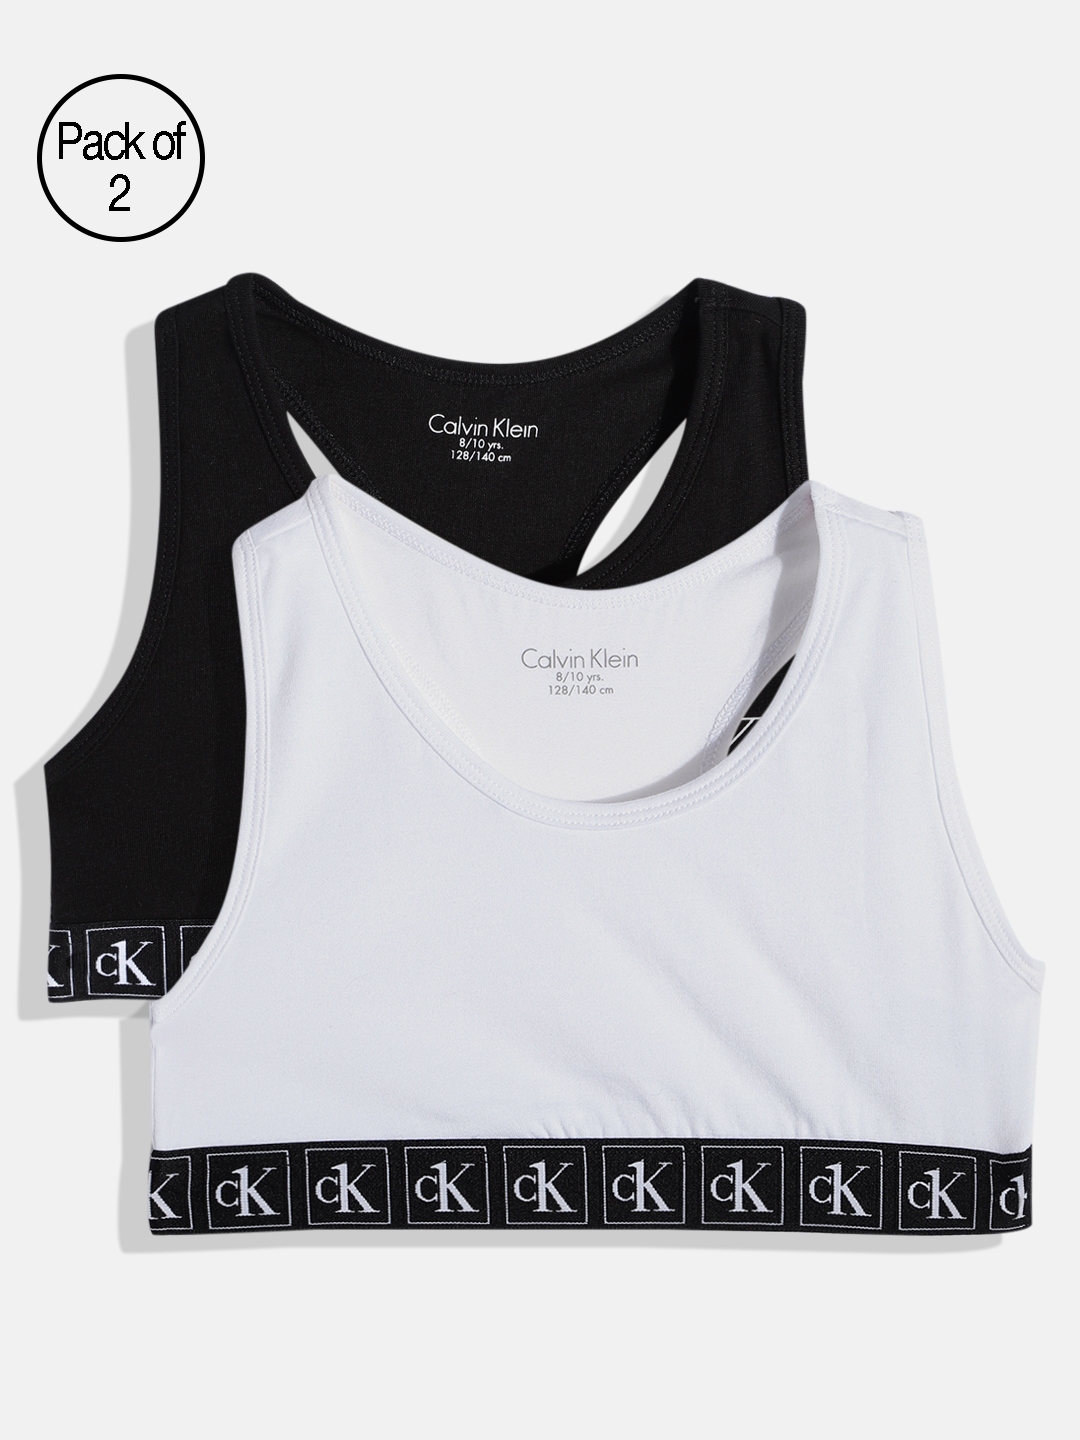 Buy Calvin Klein Underwear Black & White Typography Bralette Bra